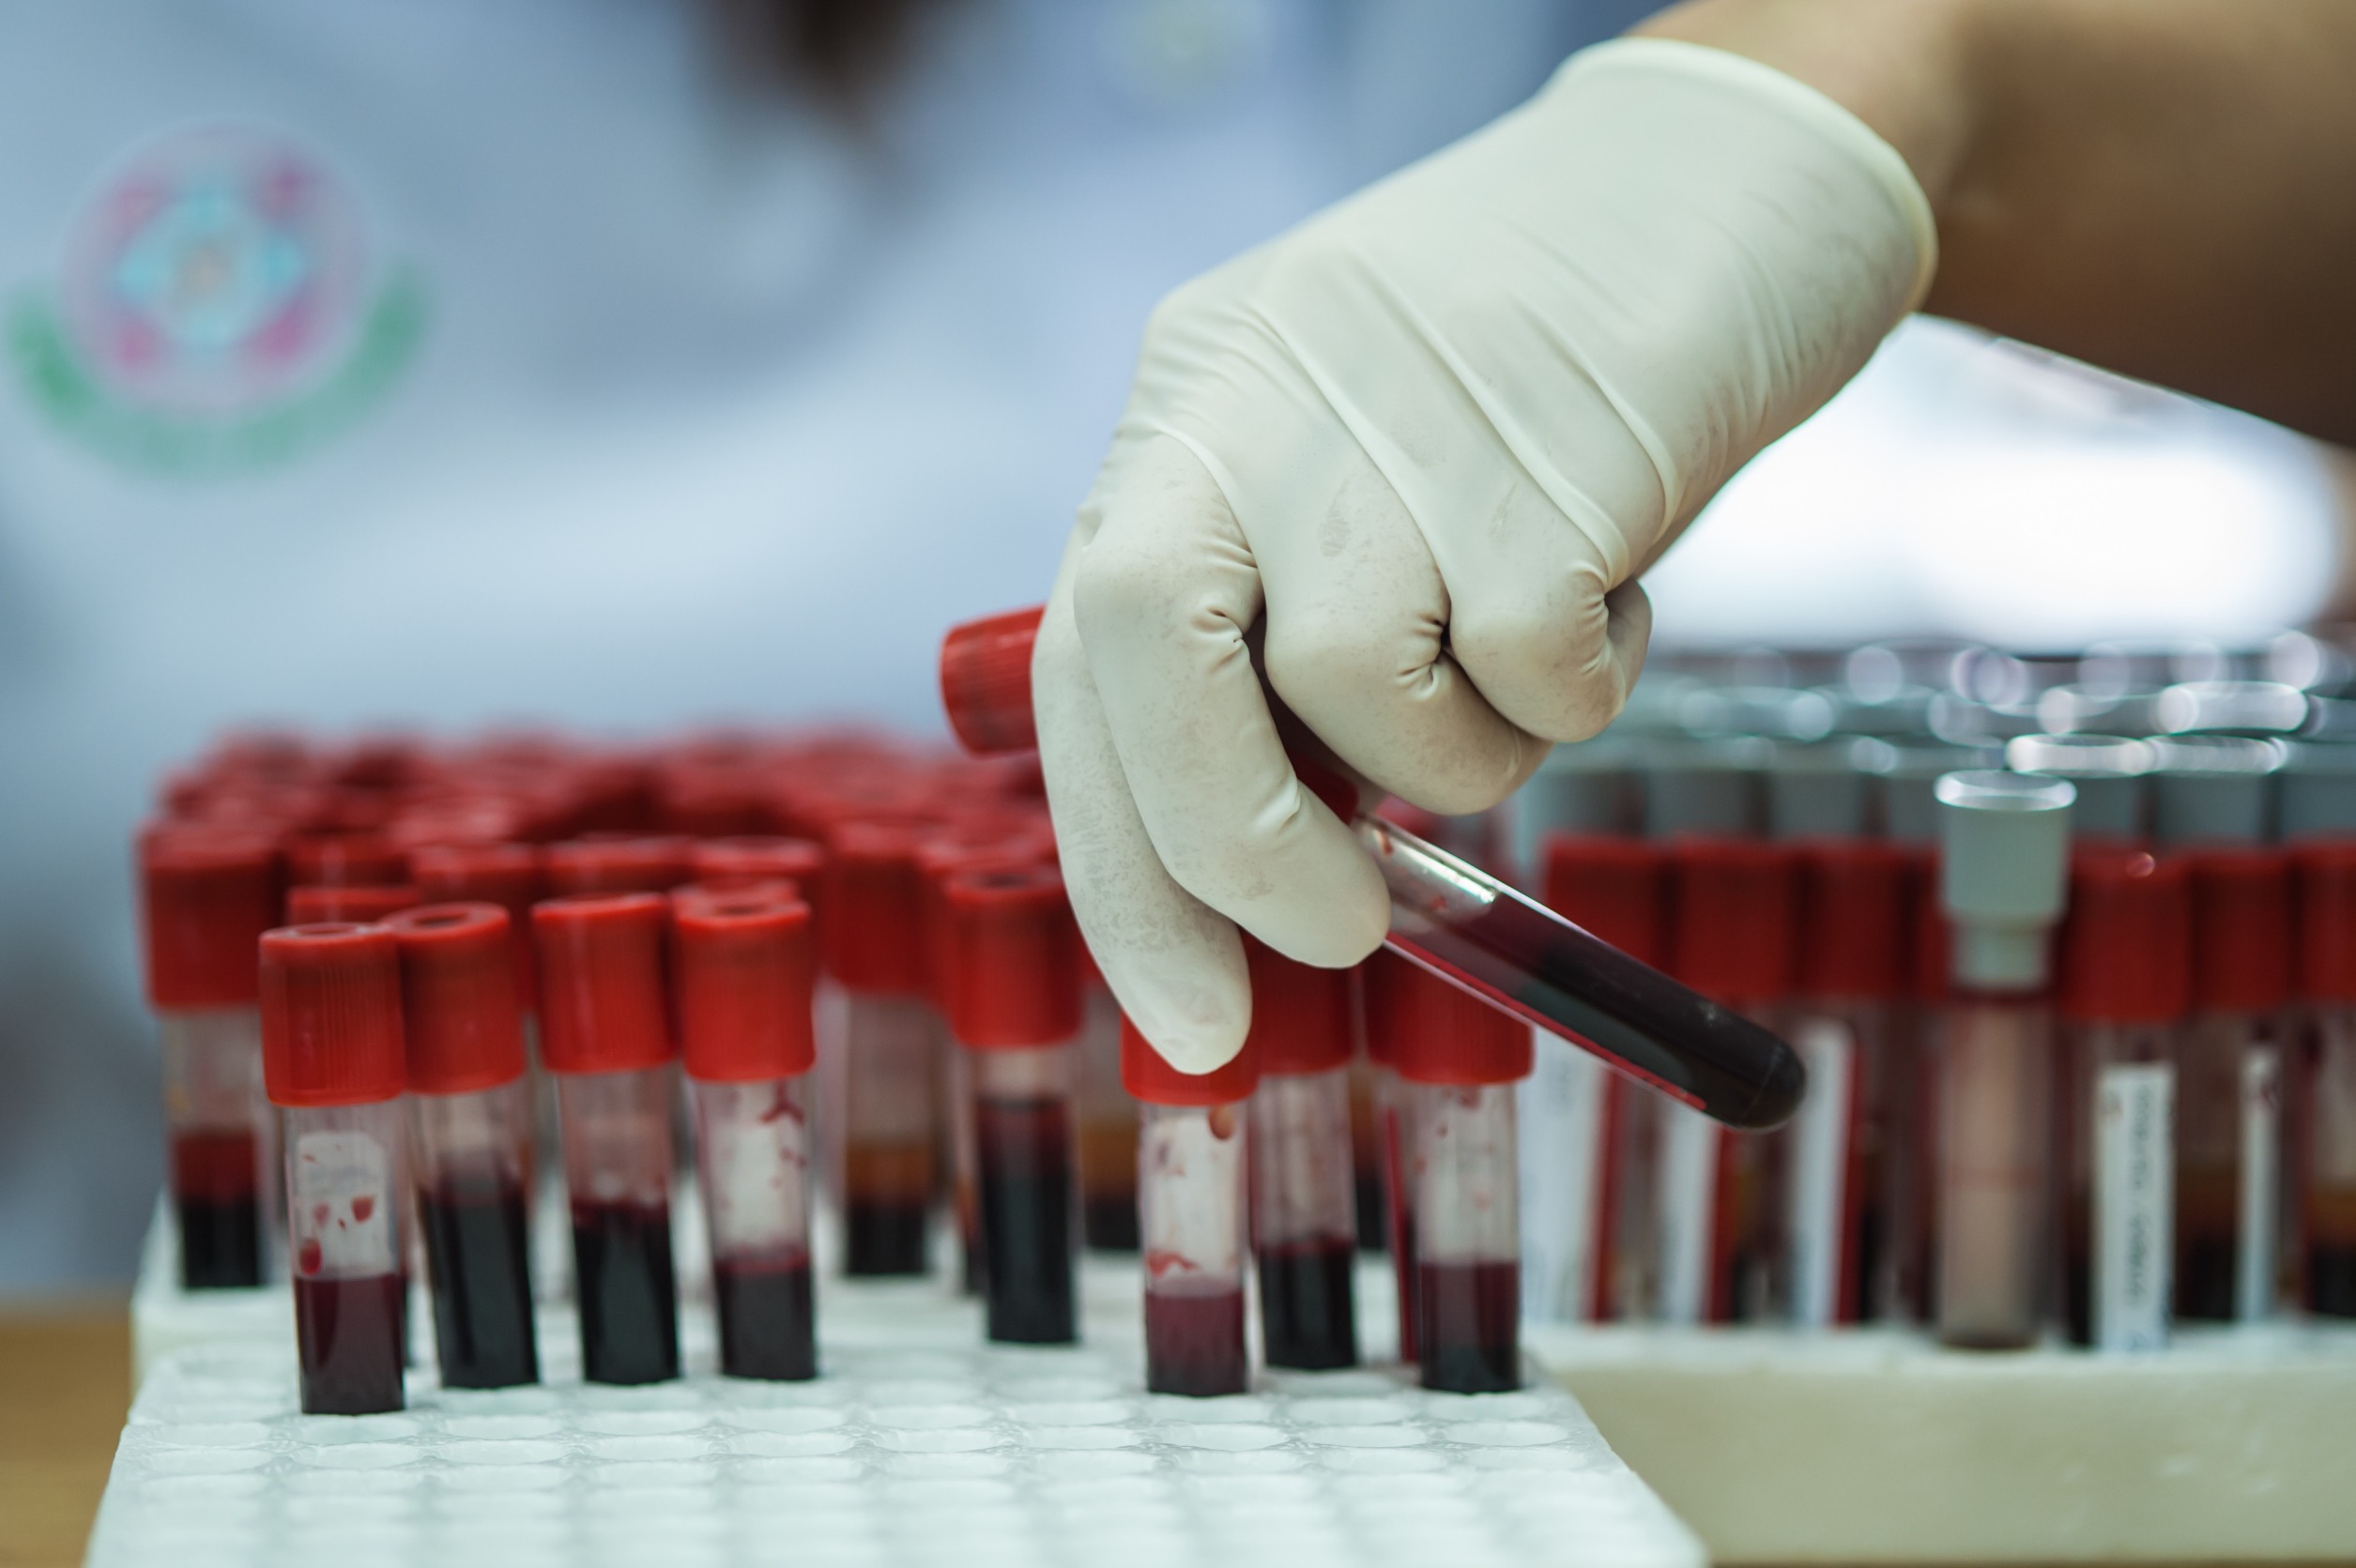 Analityk laboratoryjny wyciąga z organizera fiolkę z krwią, aby poddać ją analizie. /Źródło: 123rf.com